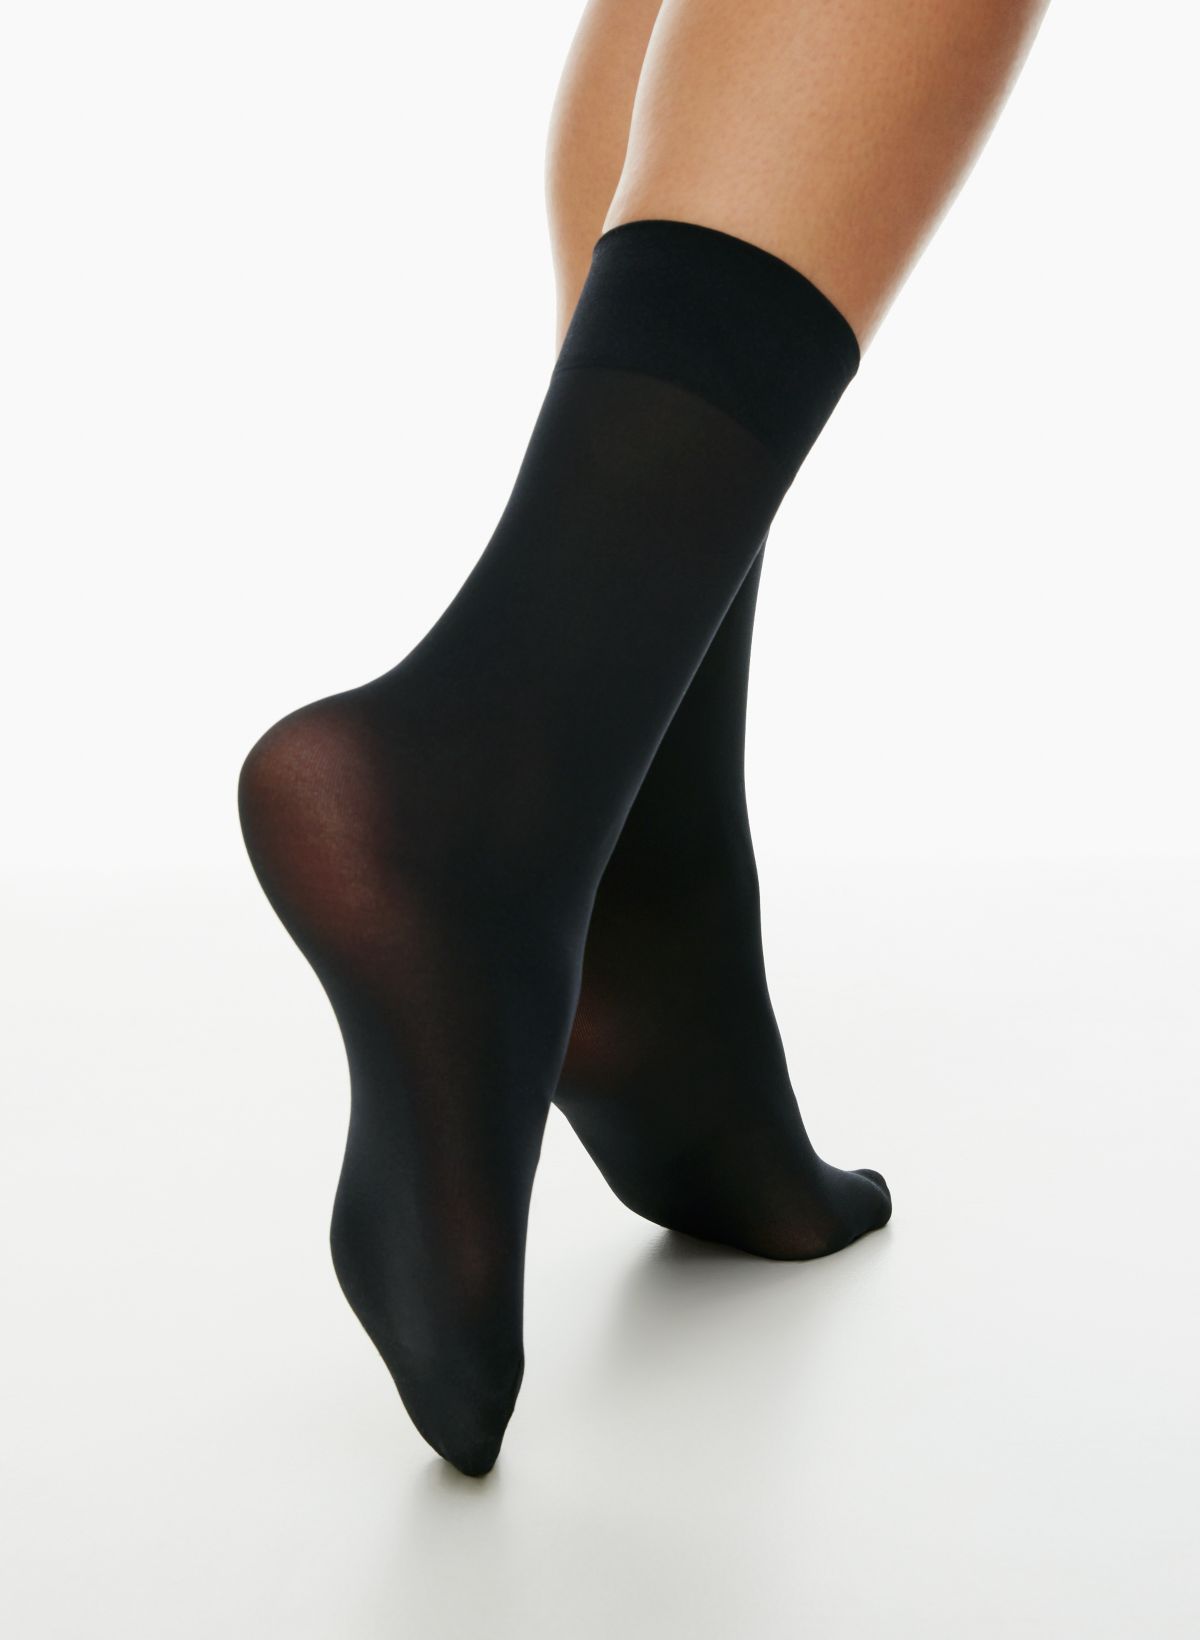 20 Denier Sheer Socks Short Socks Calzedonia, 60% OFF